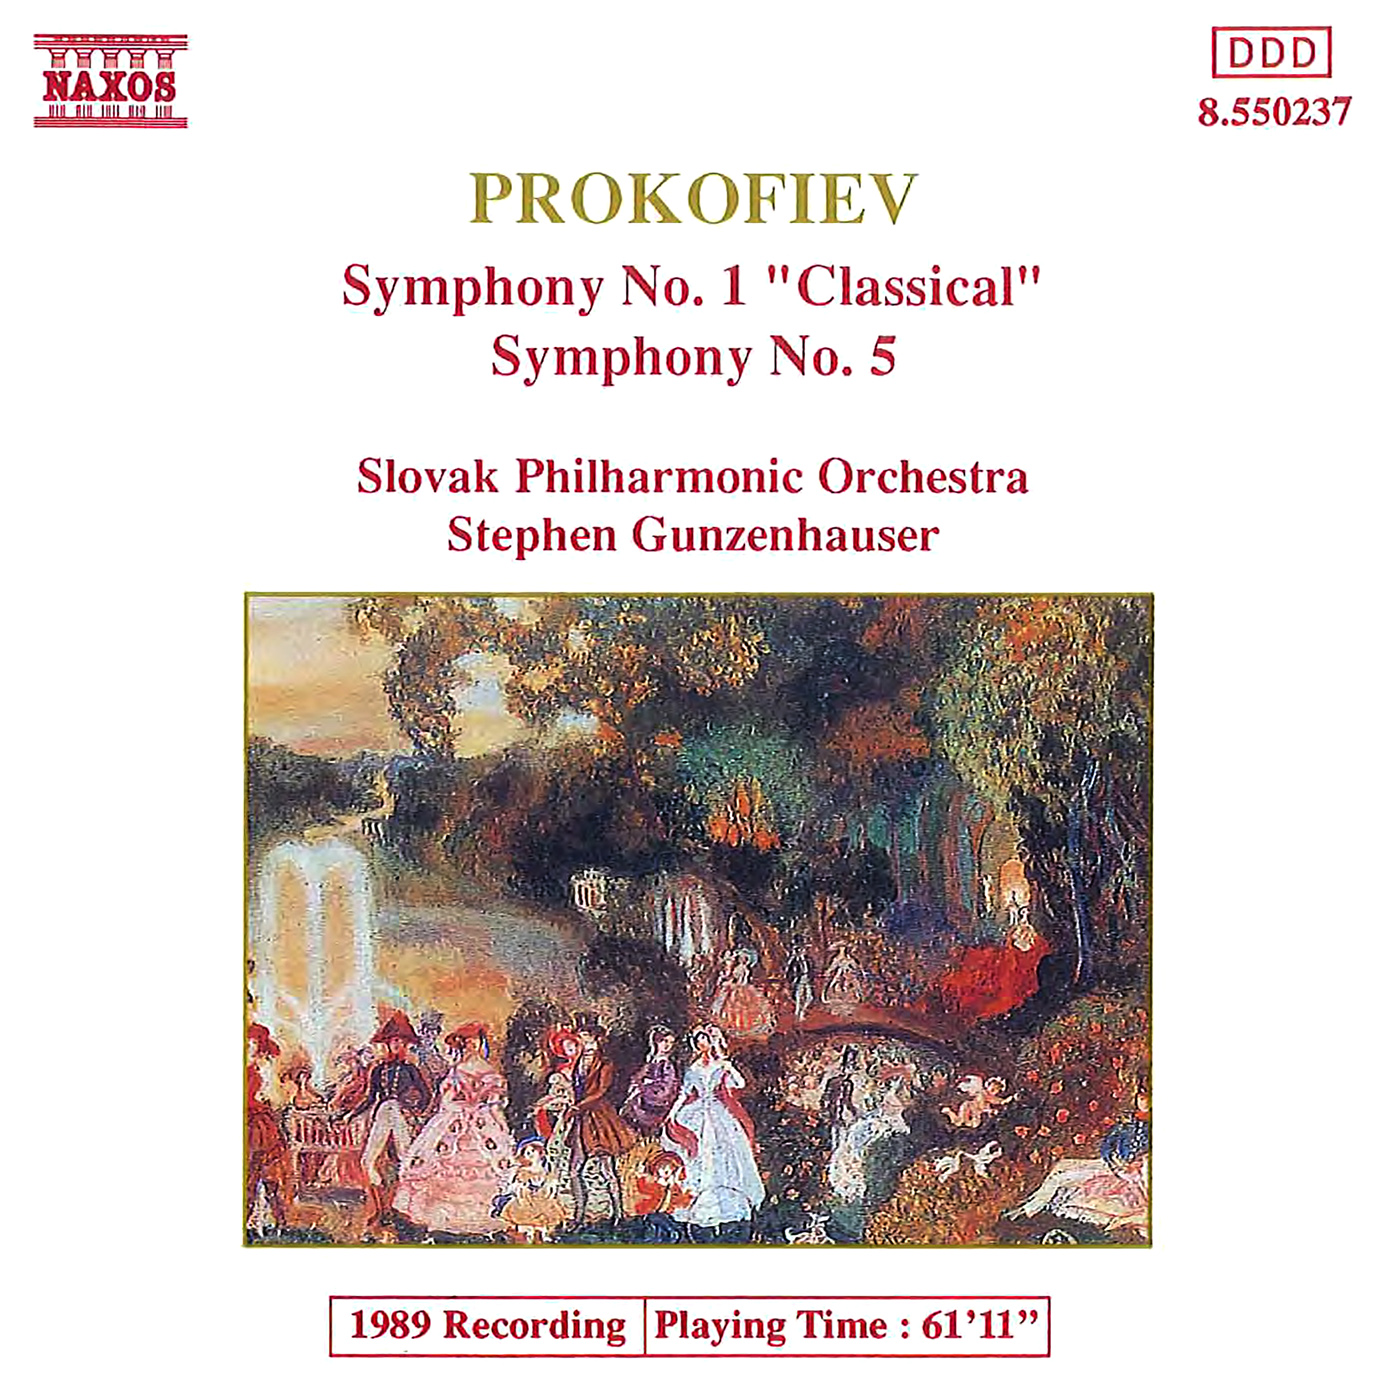 Symphony No. 5 in B-Flat Major, Op. 100: I. Andante